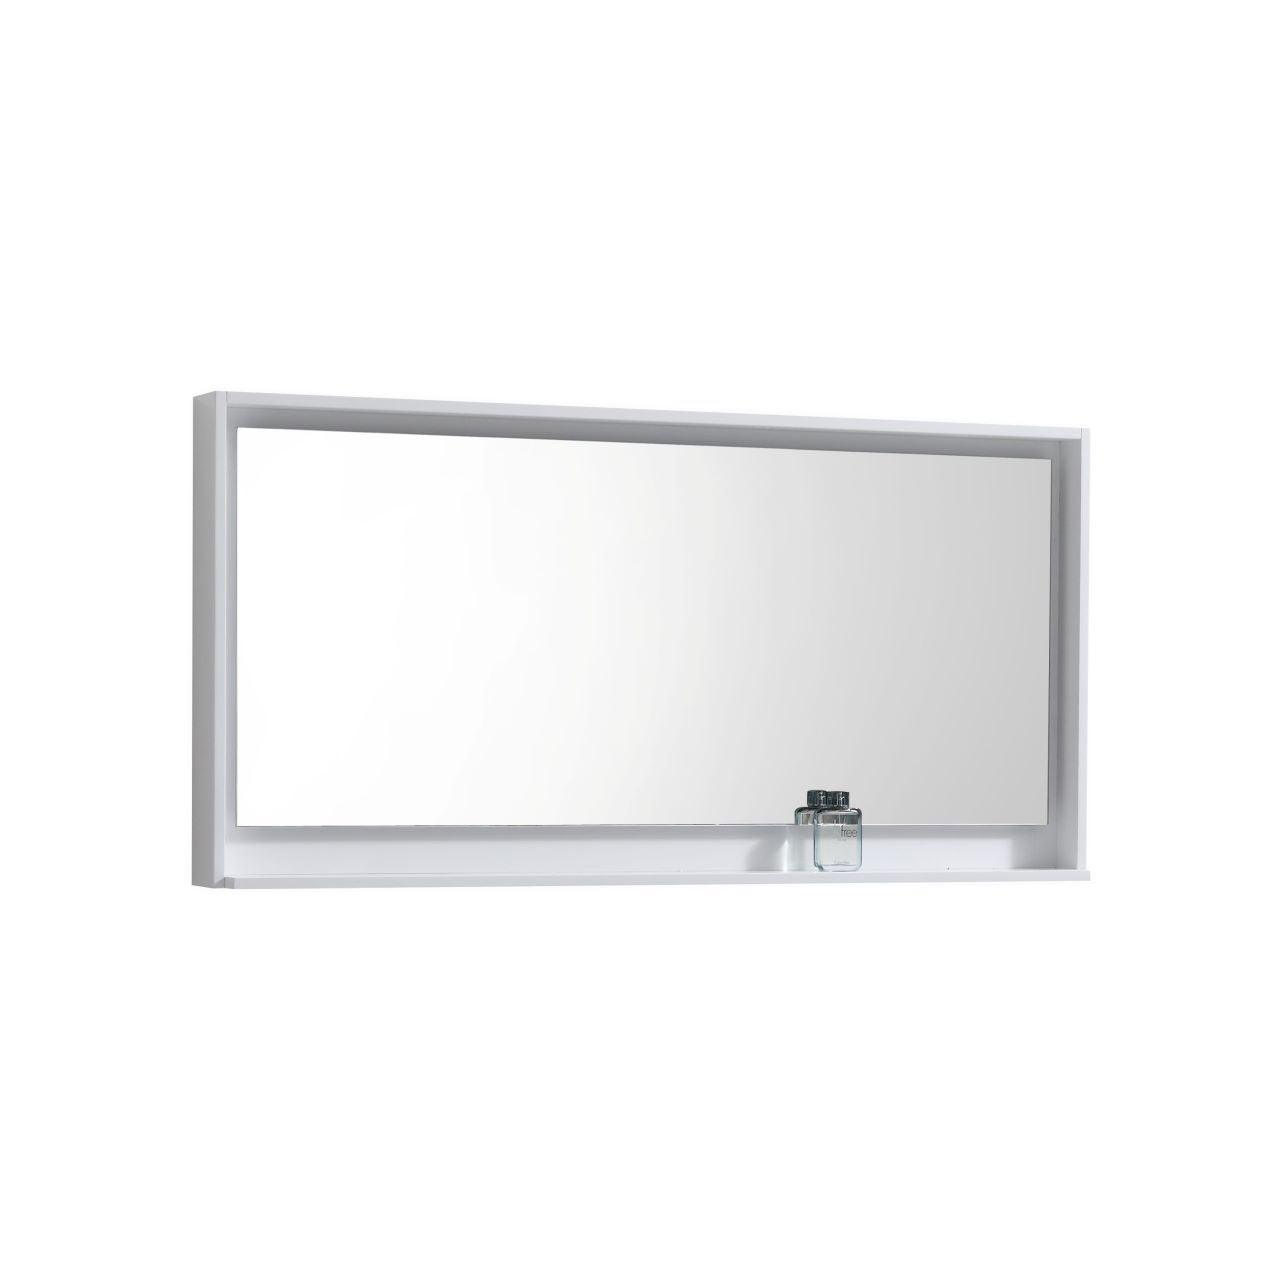 Bosco 60" Framed Mirror With Shelve - Hbdepot